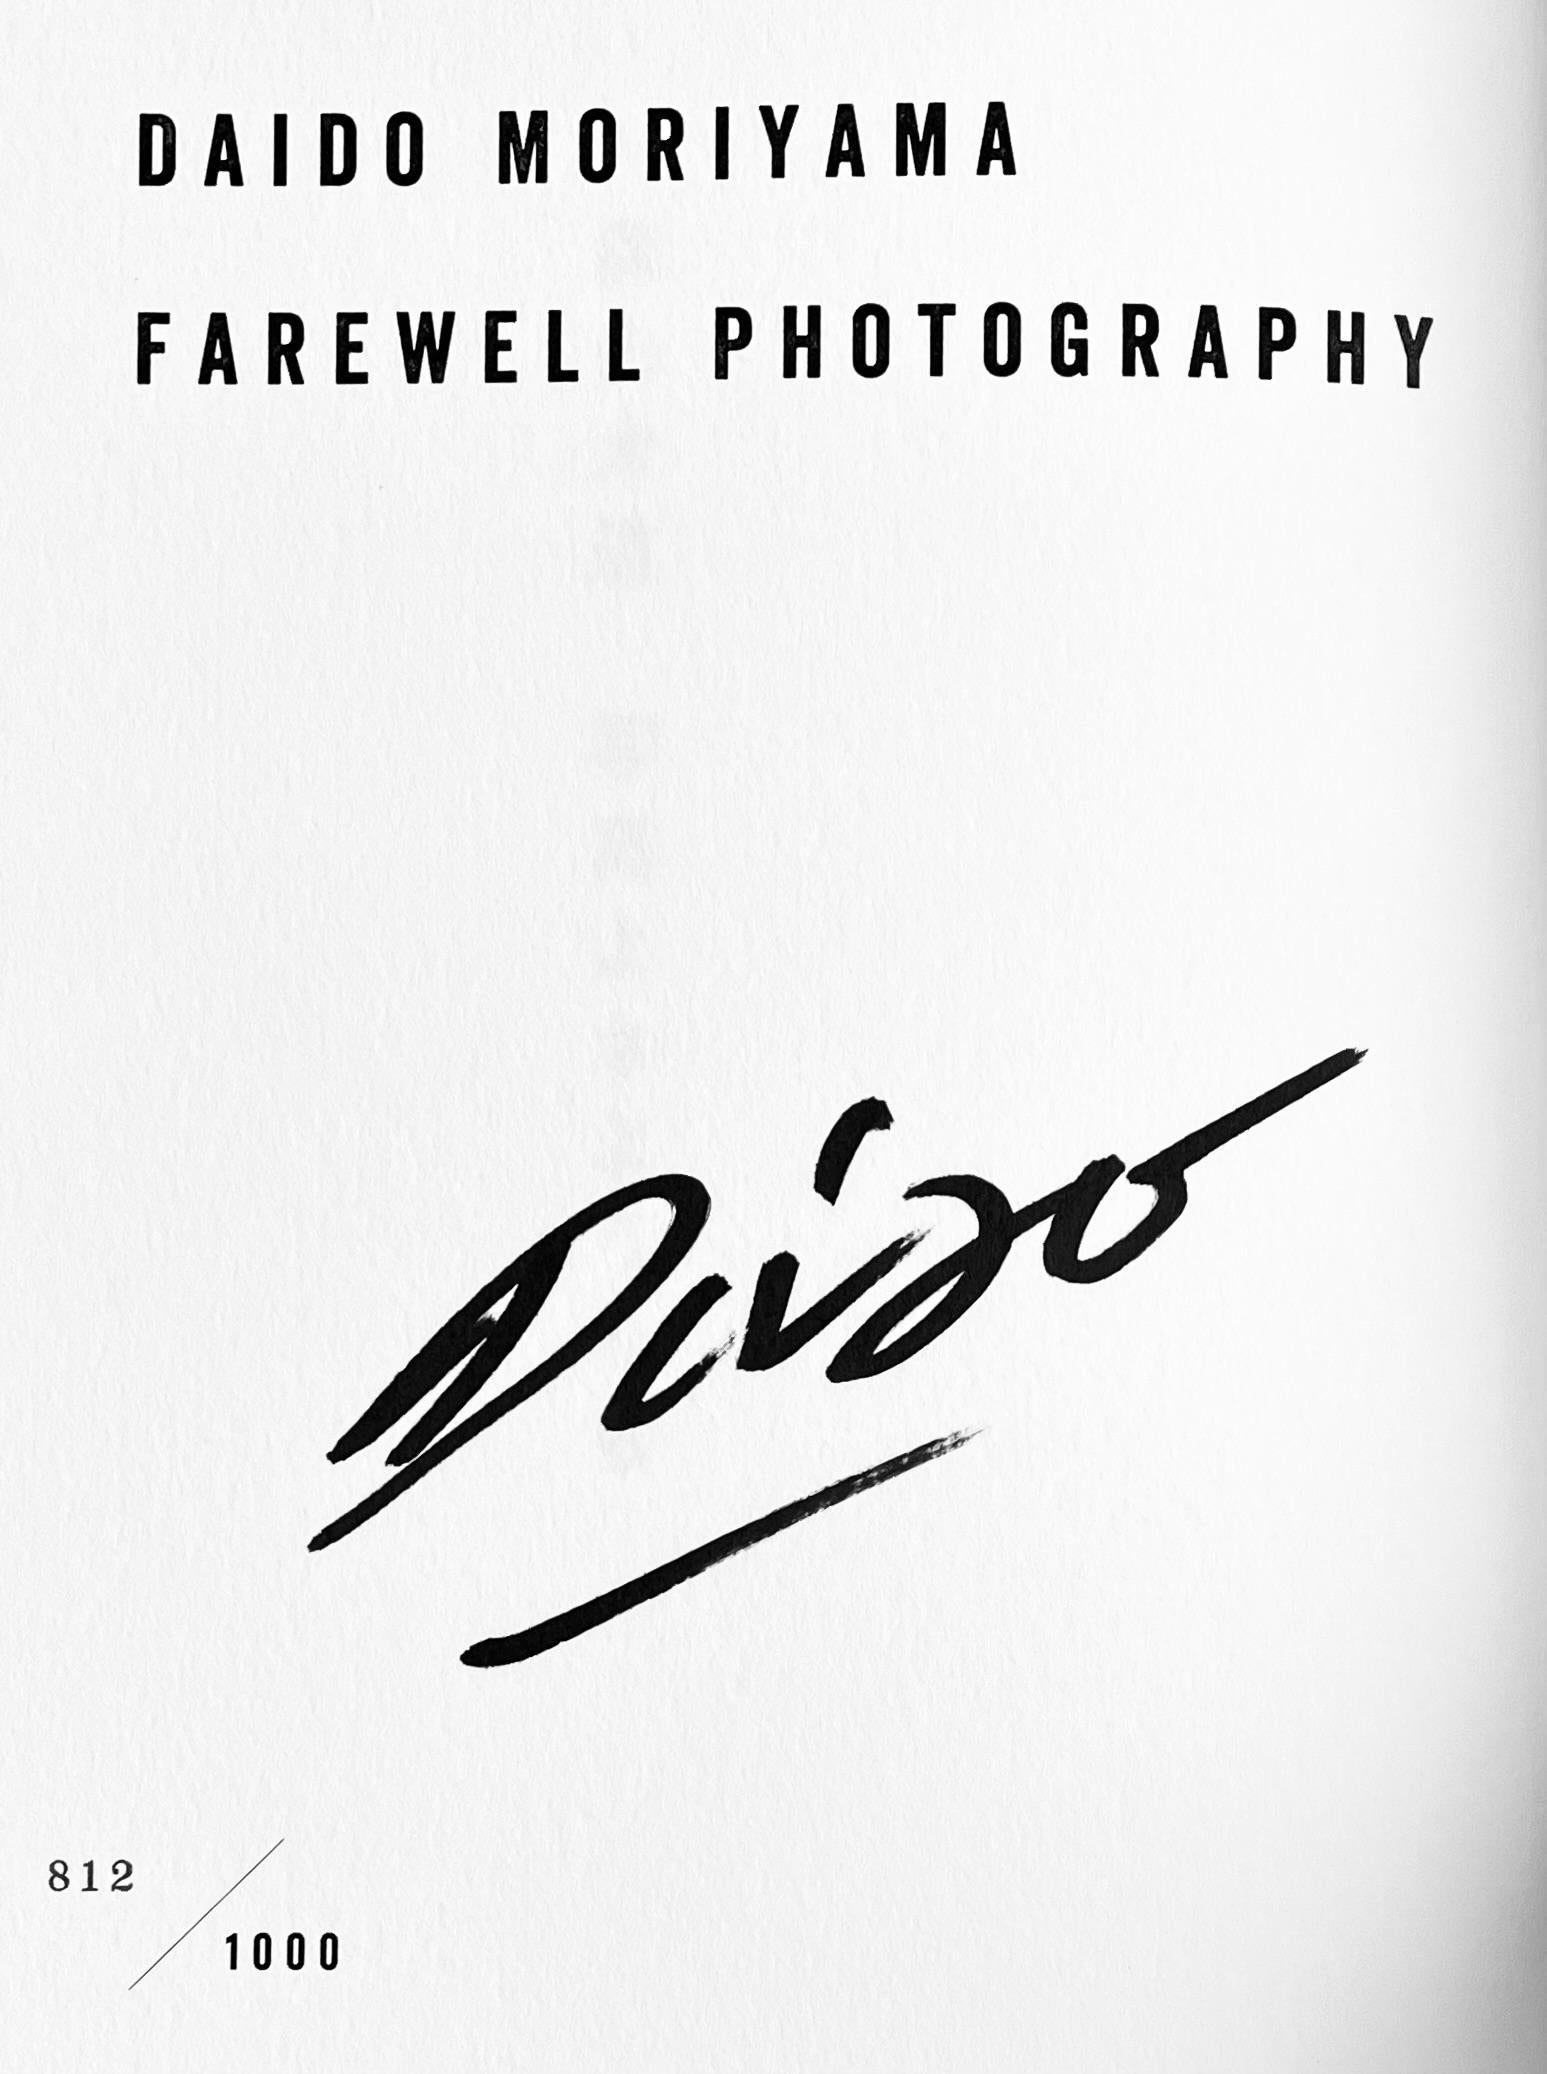 Signiertes Daido Moriyama Künstlerbuch: Daido Moriyama Farewell Photography: 

Daido Moriyamas Fotobuch Farewell Photography aus dem Jahr 1972 war eines der einflussreichsten Fotobücher, die jemals veröffentlicht wurden. Diese auffällige,